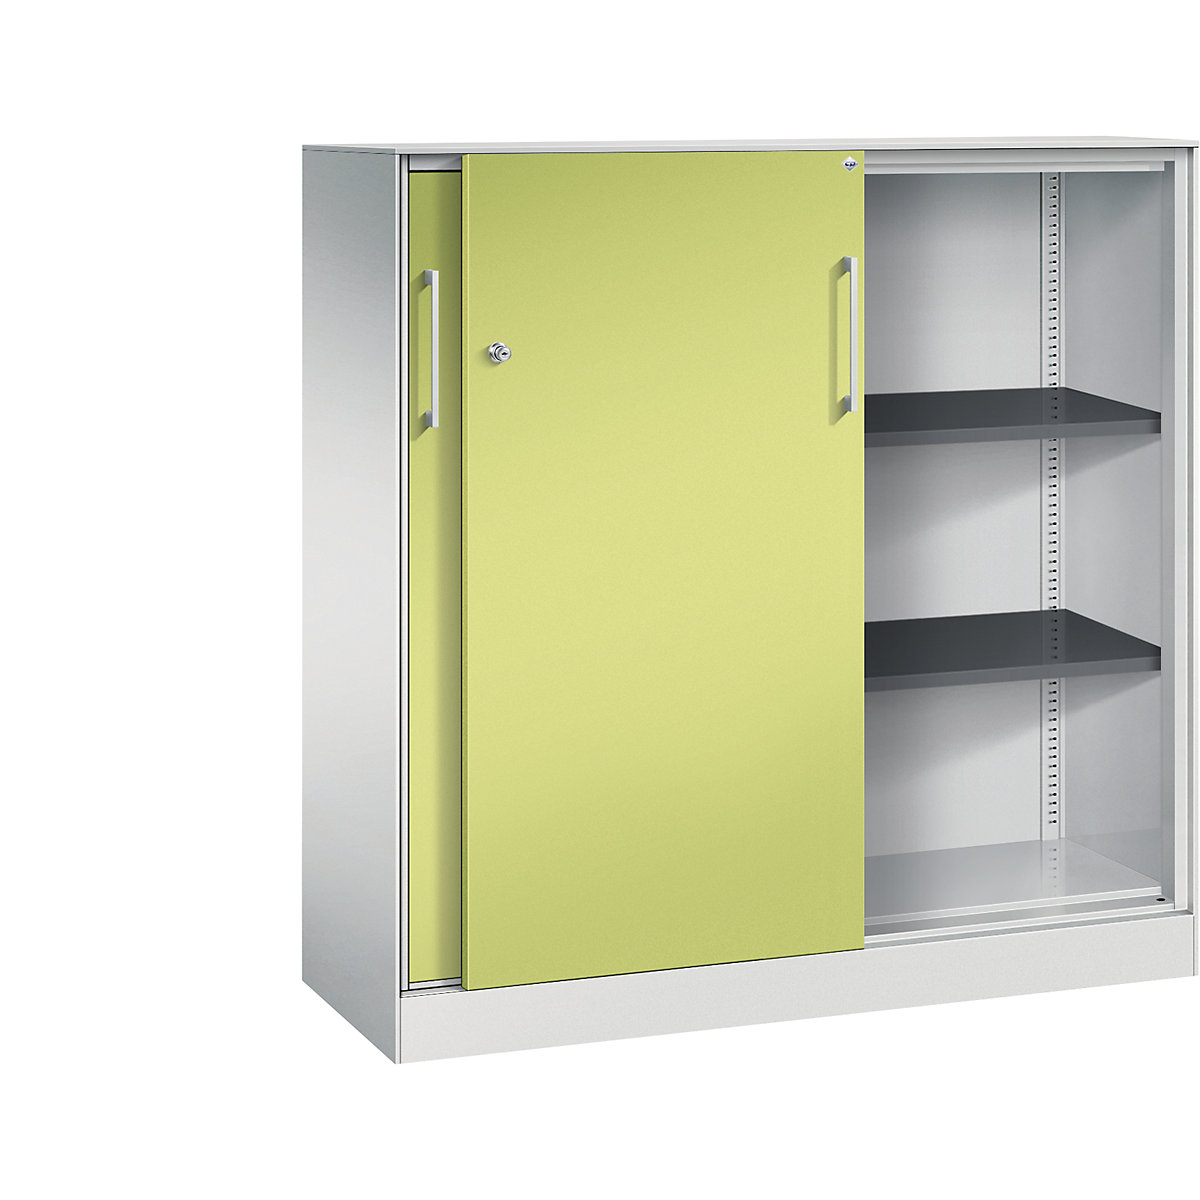 ASISTO sliding door cupboard, height 1292 mm – C+P, width 1200 mm, light grey/viridian green-12